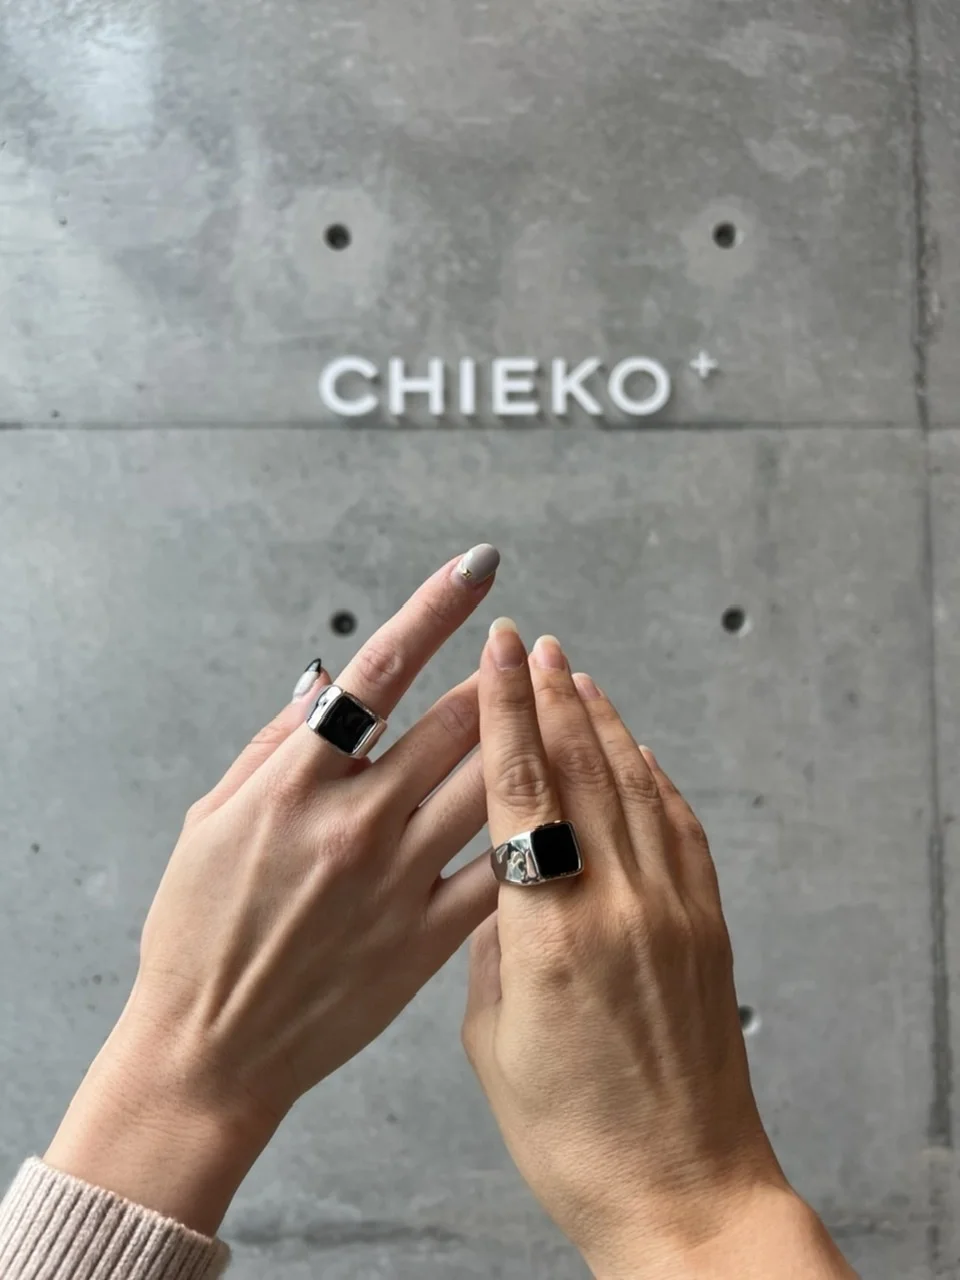 【新品未使用】CHIEKO+ チエコプラス スマートフォンショルダー